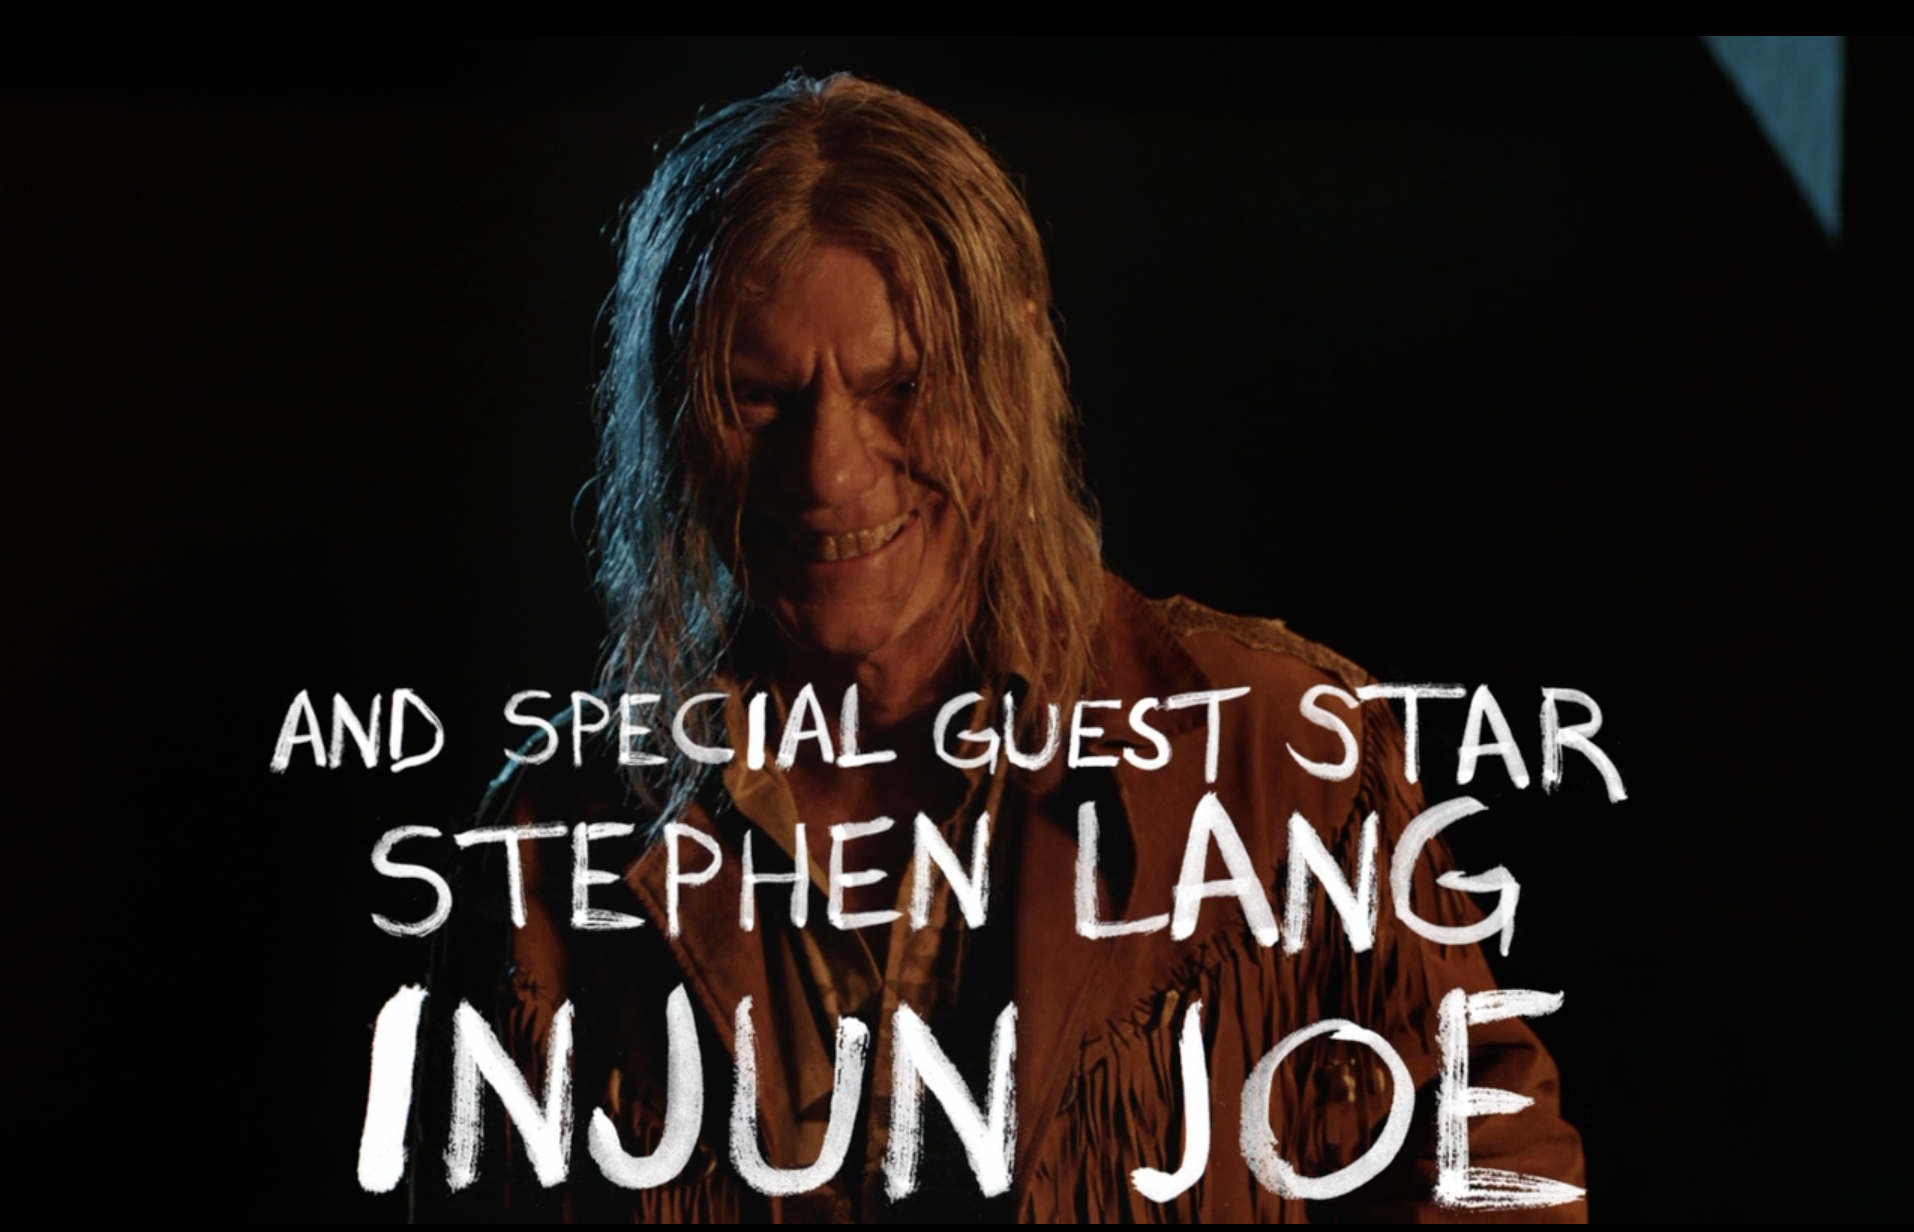 Stephen Lang as Injun Joe